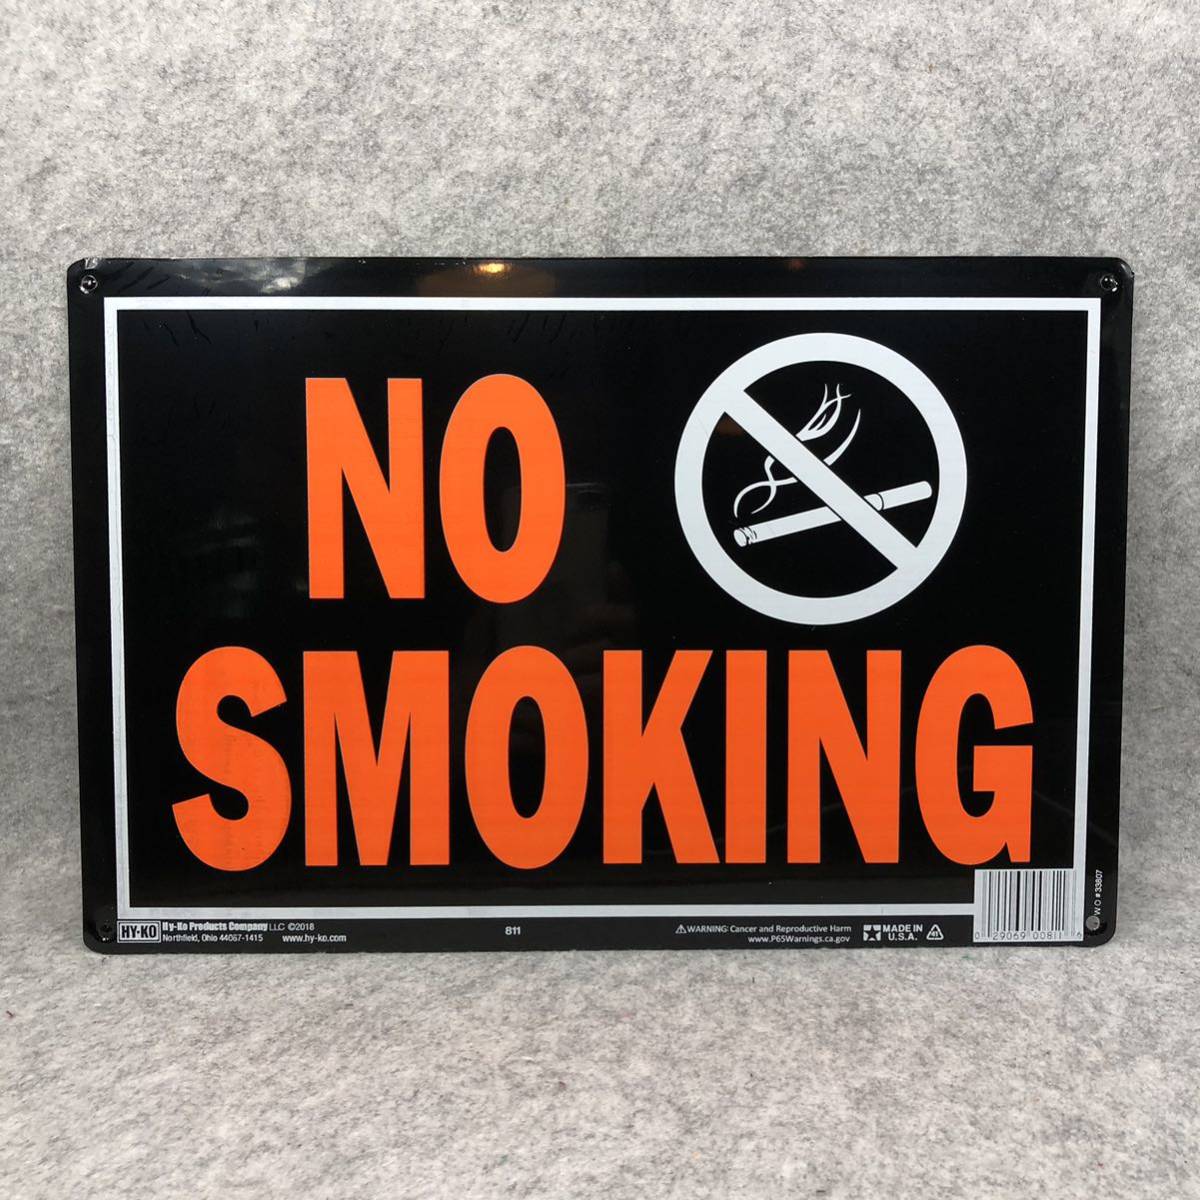 ** #NO SMOKING #SIGN # цепь имеется примерно 50cm #PLATESIGN #ALUMINUMSIGN #SIGNBOARD #MadeInUSA #HY-KO #DIY # табличка # путеводитель доска **